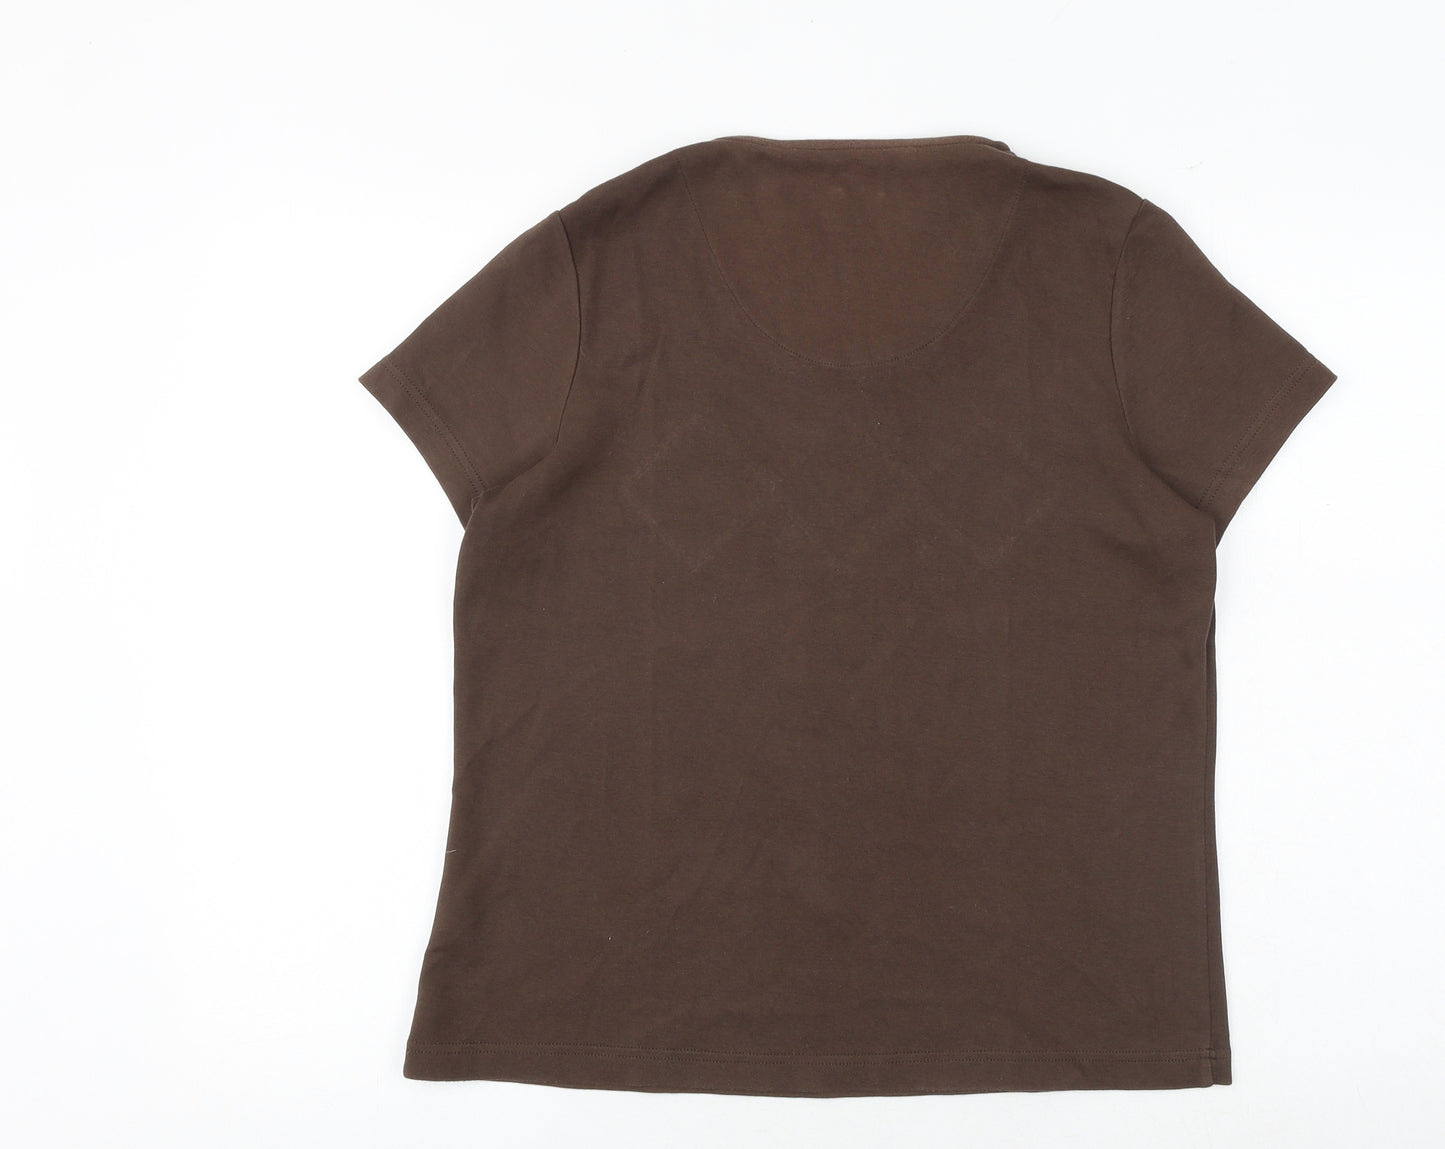 DASH Womens Brown Cotton Basic T-Shirt Size 16 Round Neck